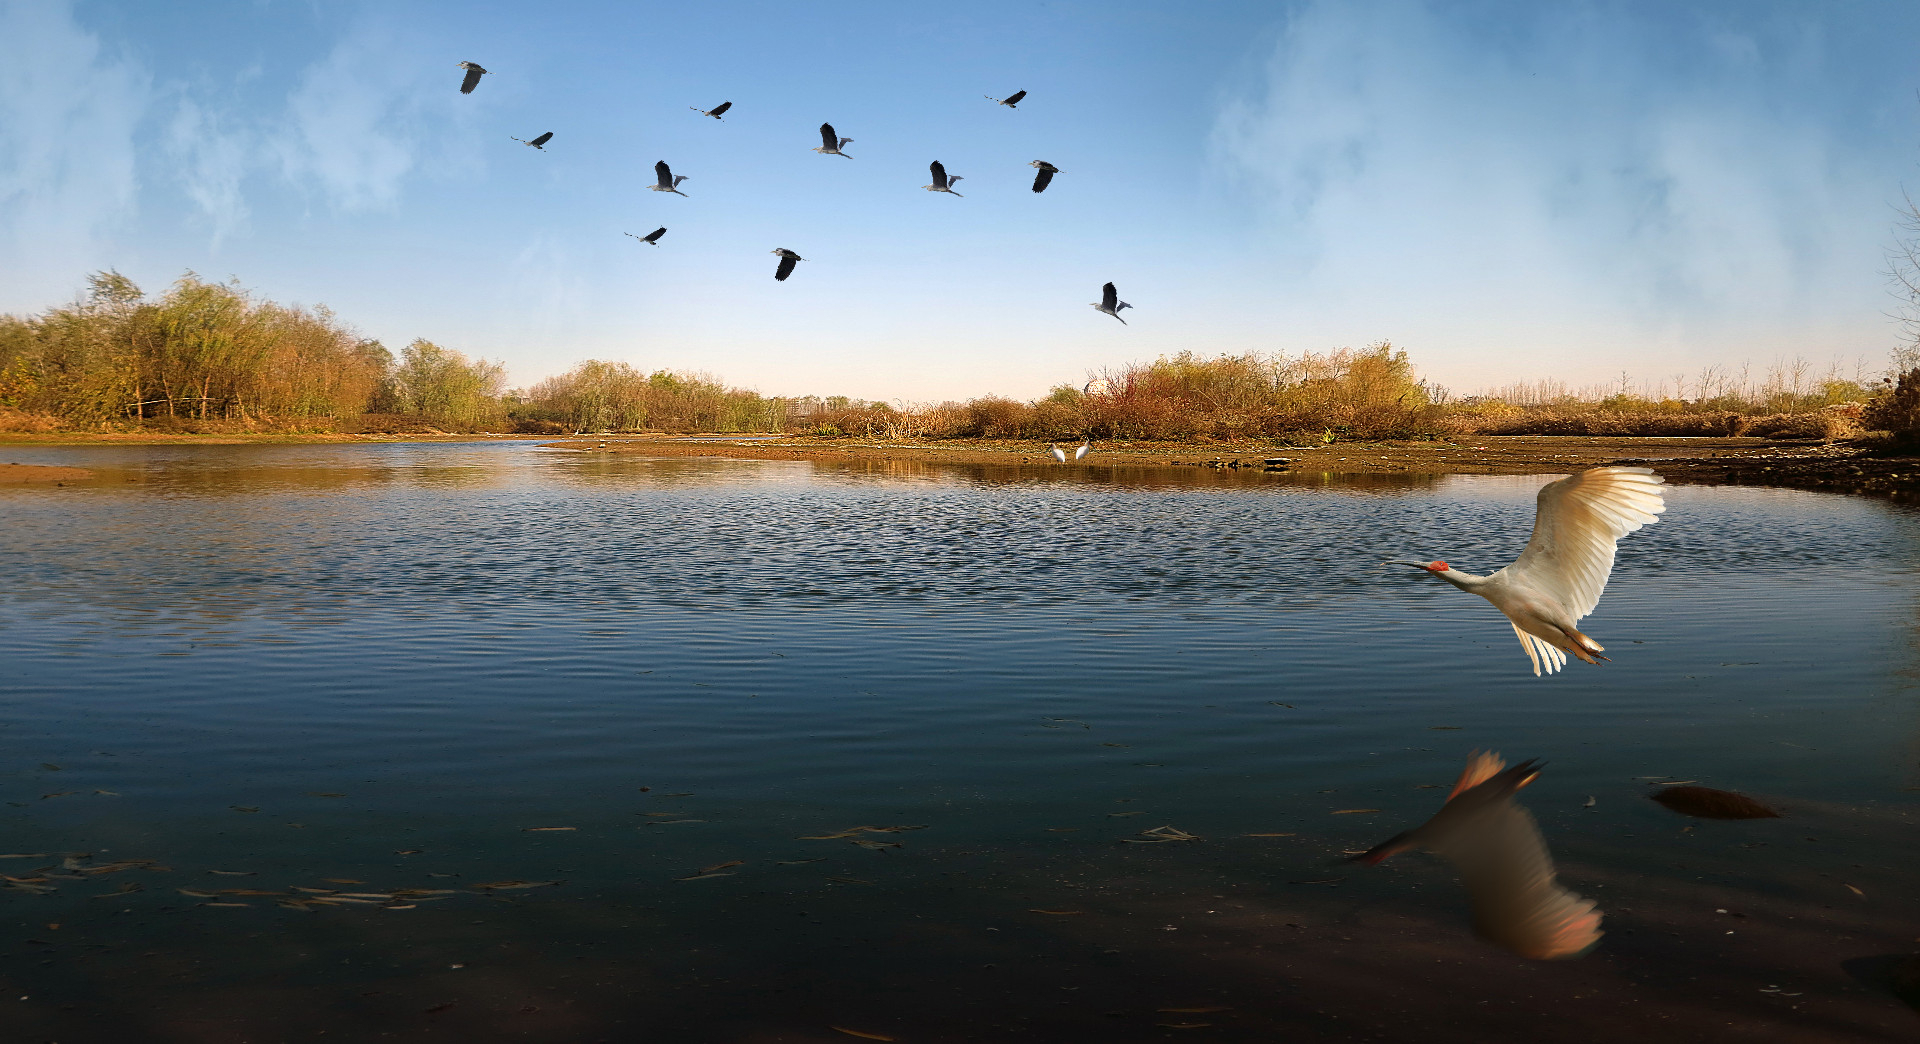 人与自然和谐共生；《鸟儿的天堂》组图   5  赵德如拍摄于2014年11月，浐灞湿地  15529333691.jpg